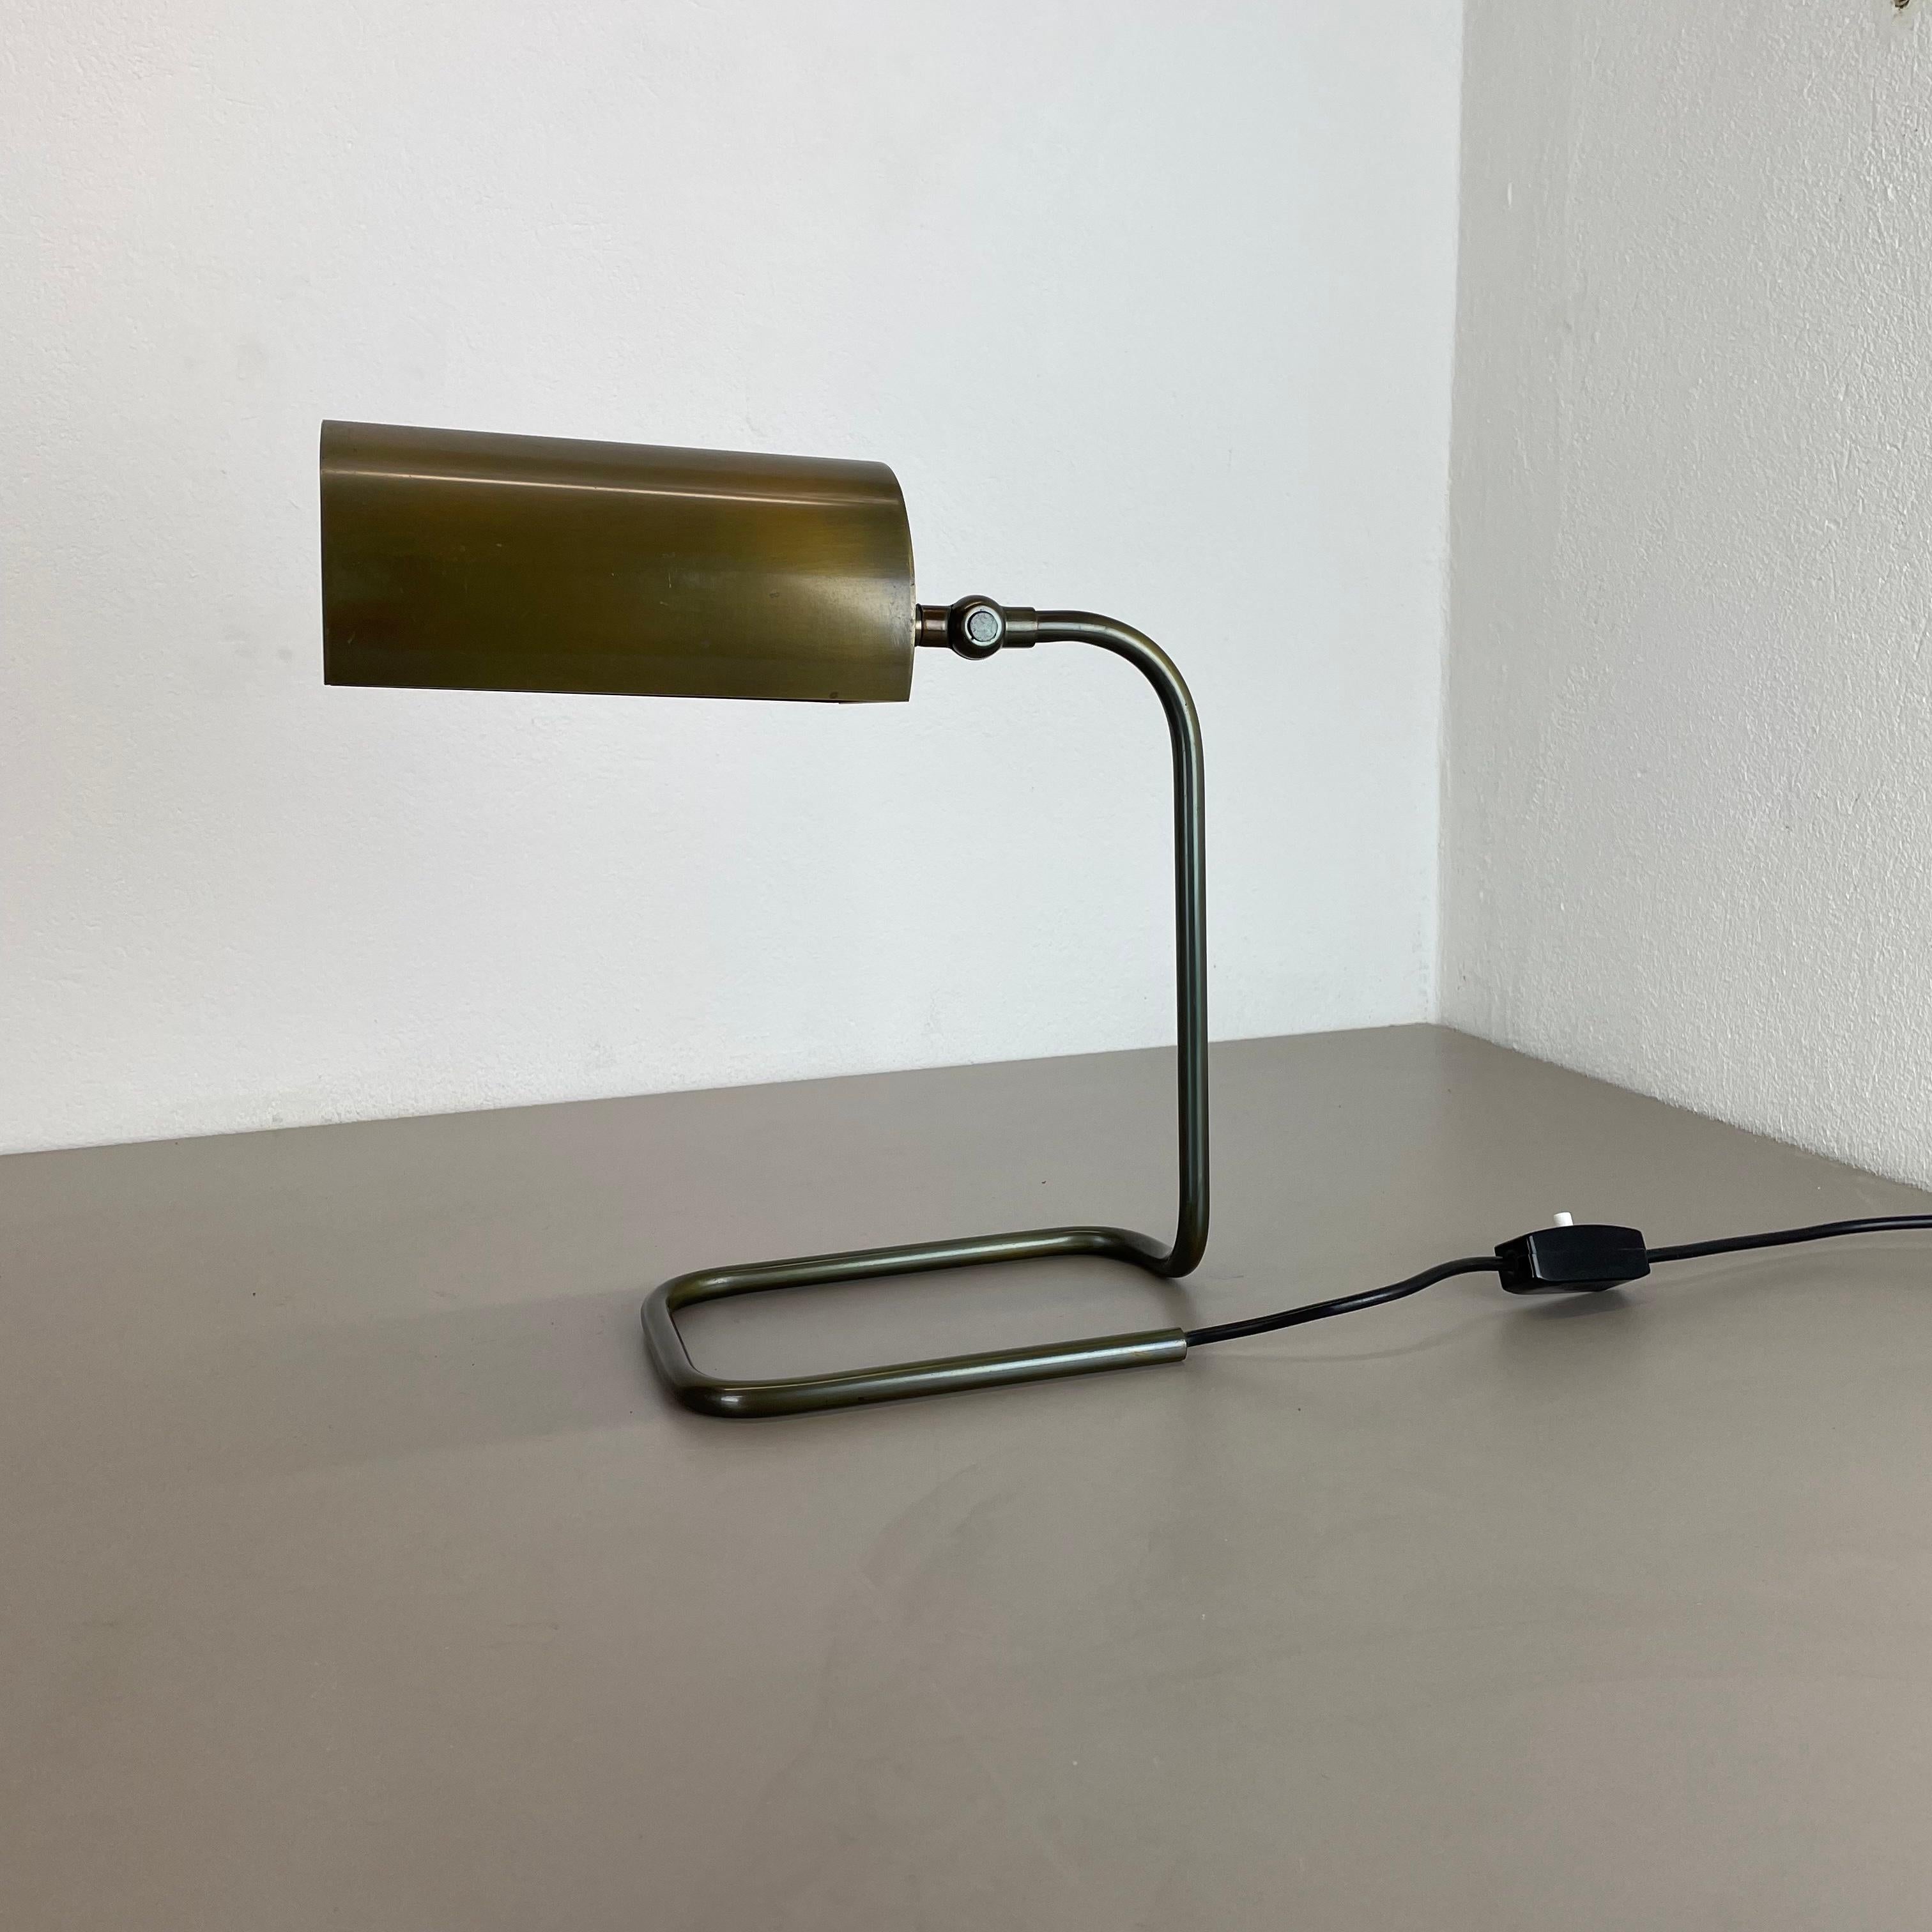 Article :

Lampe de table


Origine :

Allemagne


Matériau :

Métal  laiton


Âge :

1970s



Description :

Cette lampe de table vintage originale a été conçue et produite en Allemagne dans les années 1970. Cette lampe de table minimaliste est